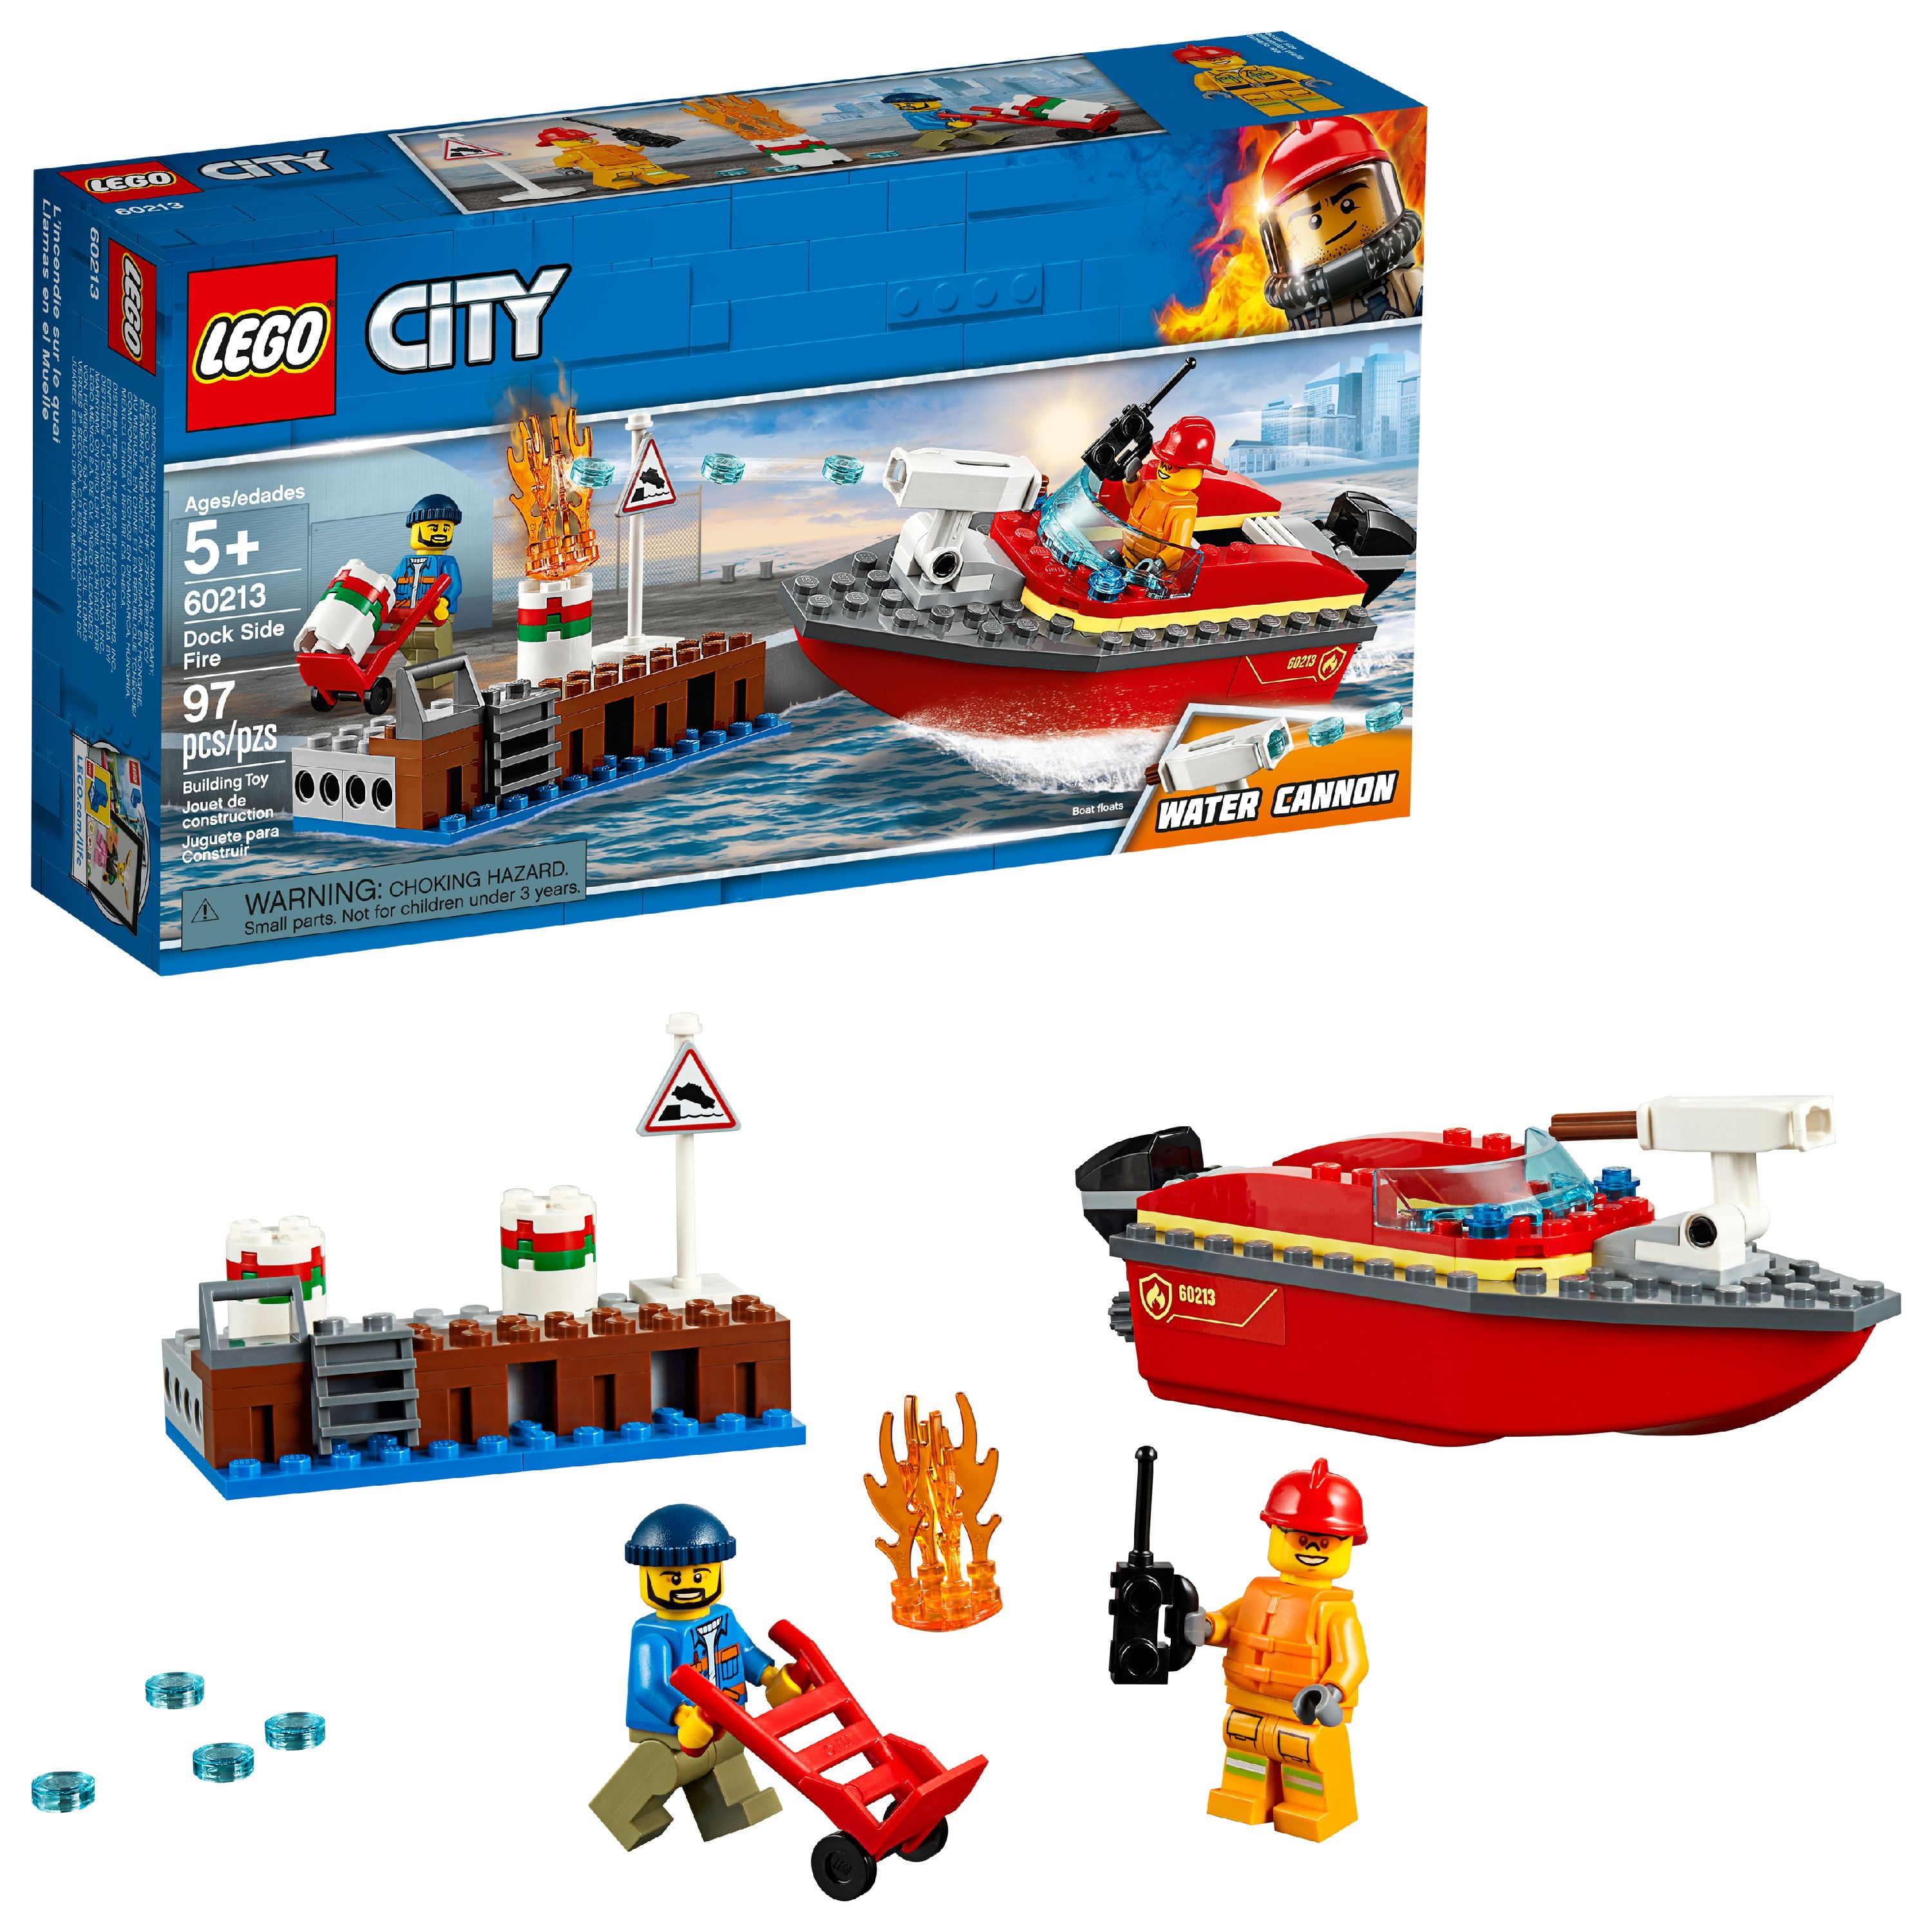 springe fredelig Intermediate LEGO City Fire Dock Side Fire 60213 Fireboat Rescue Ship - Walmart.com